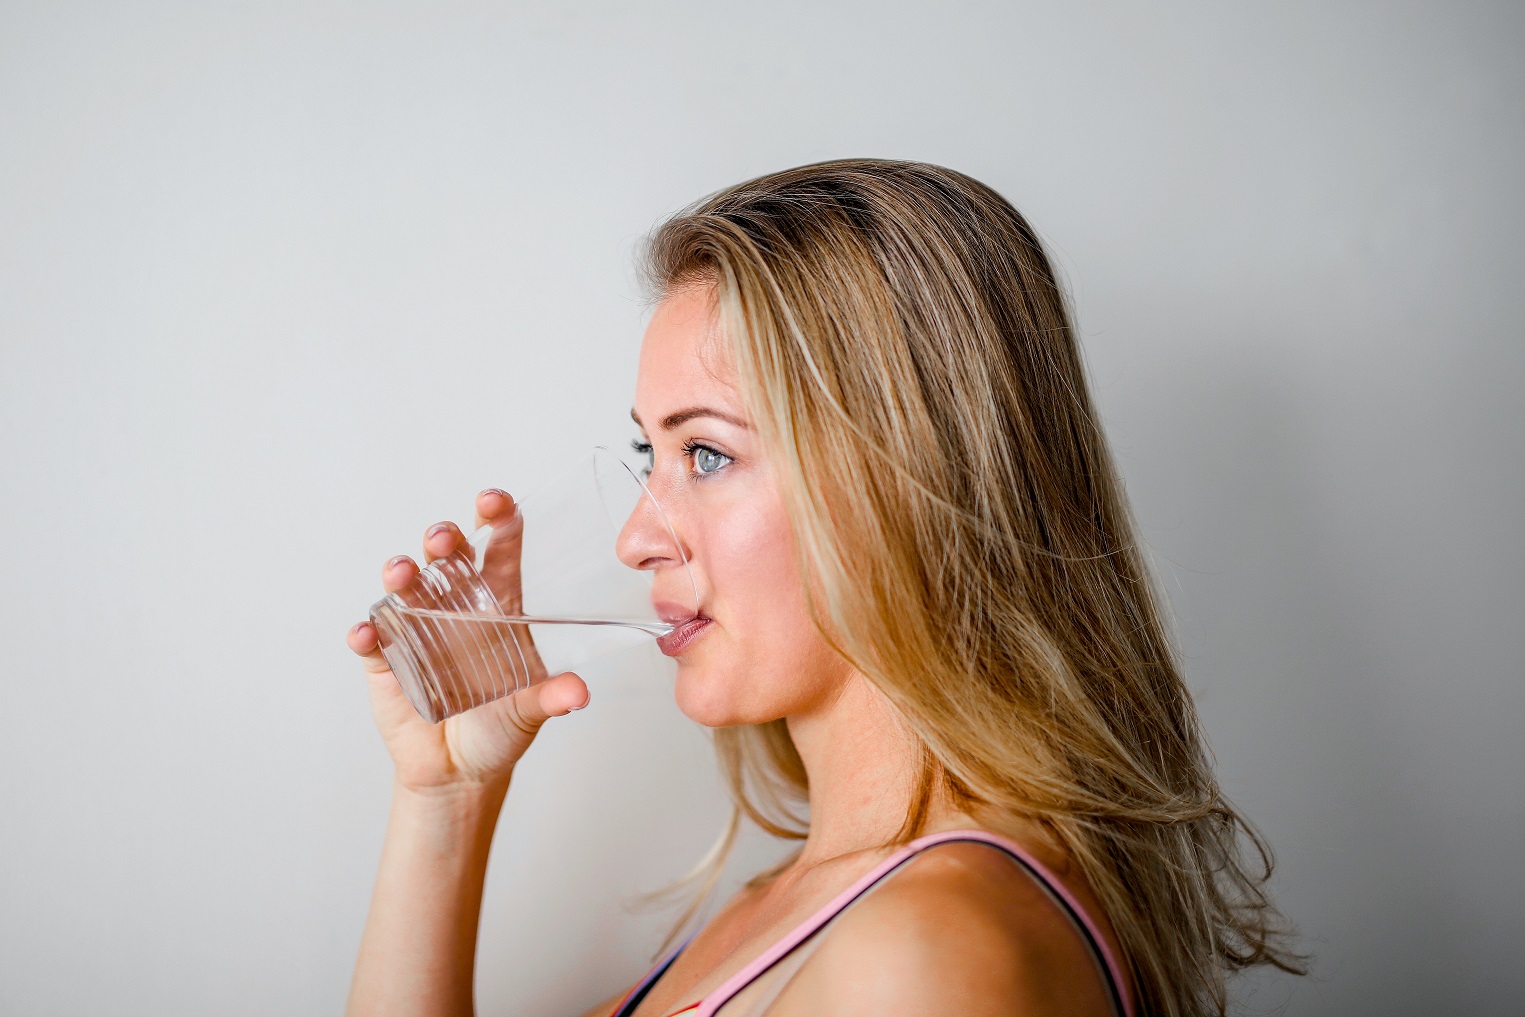 Minum Air Putih 8 Gelas per Hari Jadi Kunci Bahagia, Mitos atau Fakta?